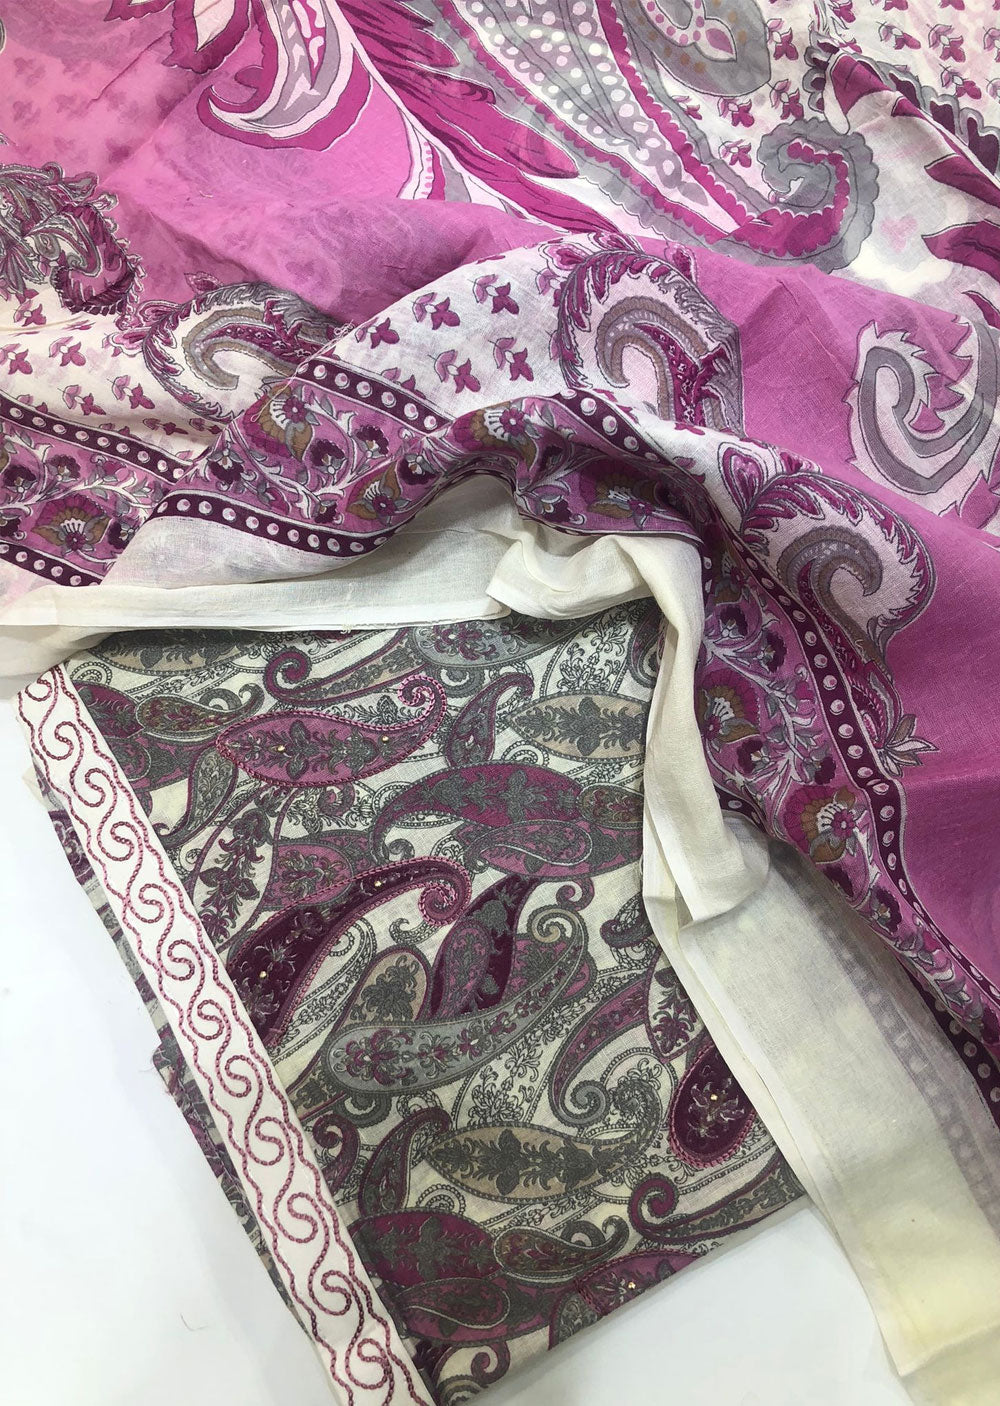 ATQ 6659 - Unstitched Purple Cotton Suit - Memsaab Online